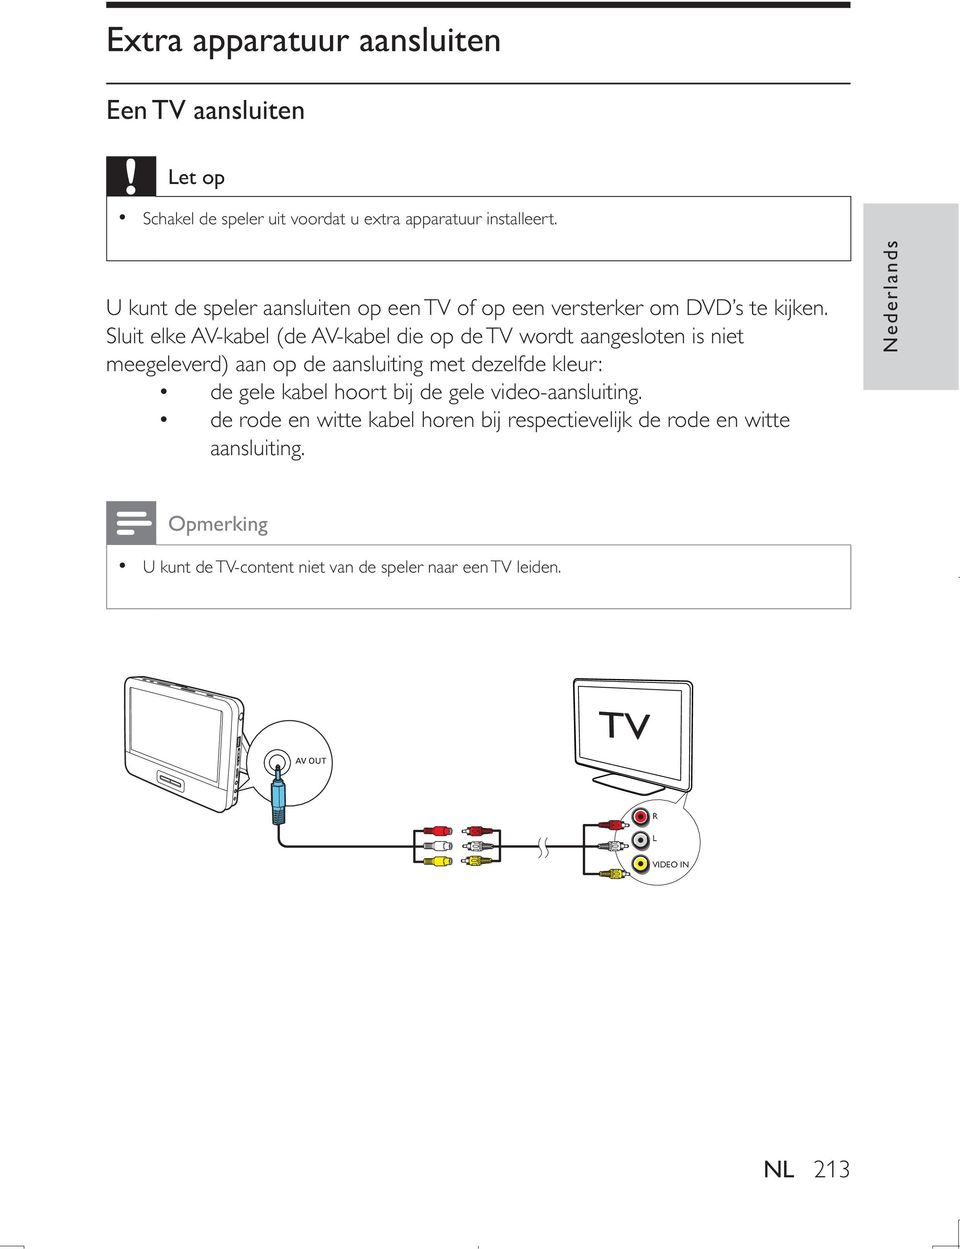 Sluit elke AV-kabel (de AV-kabel die op de TV wordt aangesloten is niet meegeleverd) aan op de aansluiting met dezelfde kleur: de gele